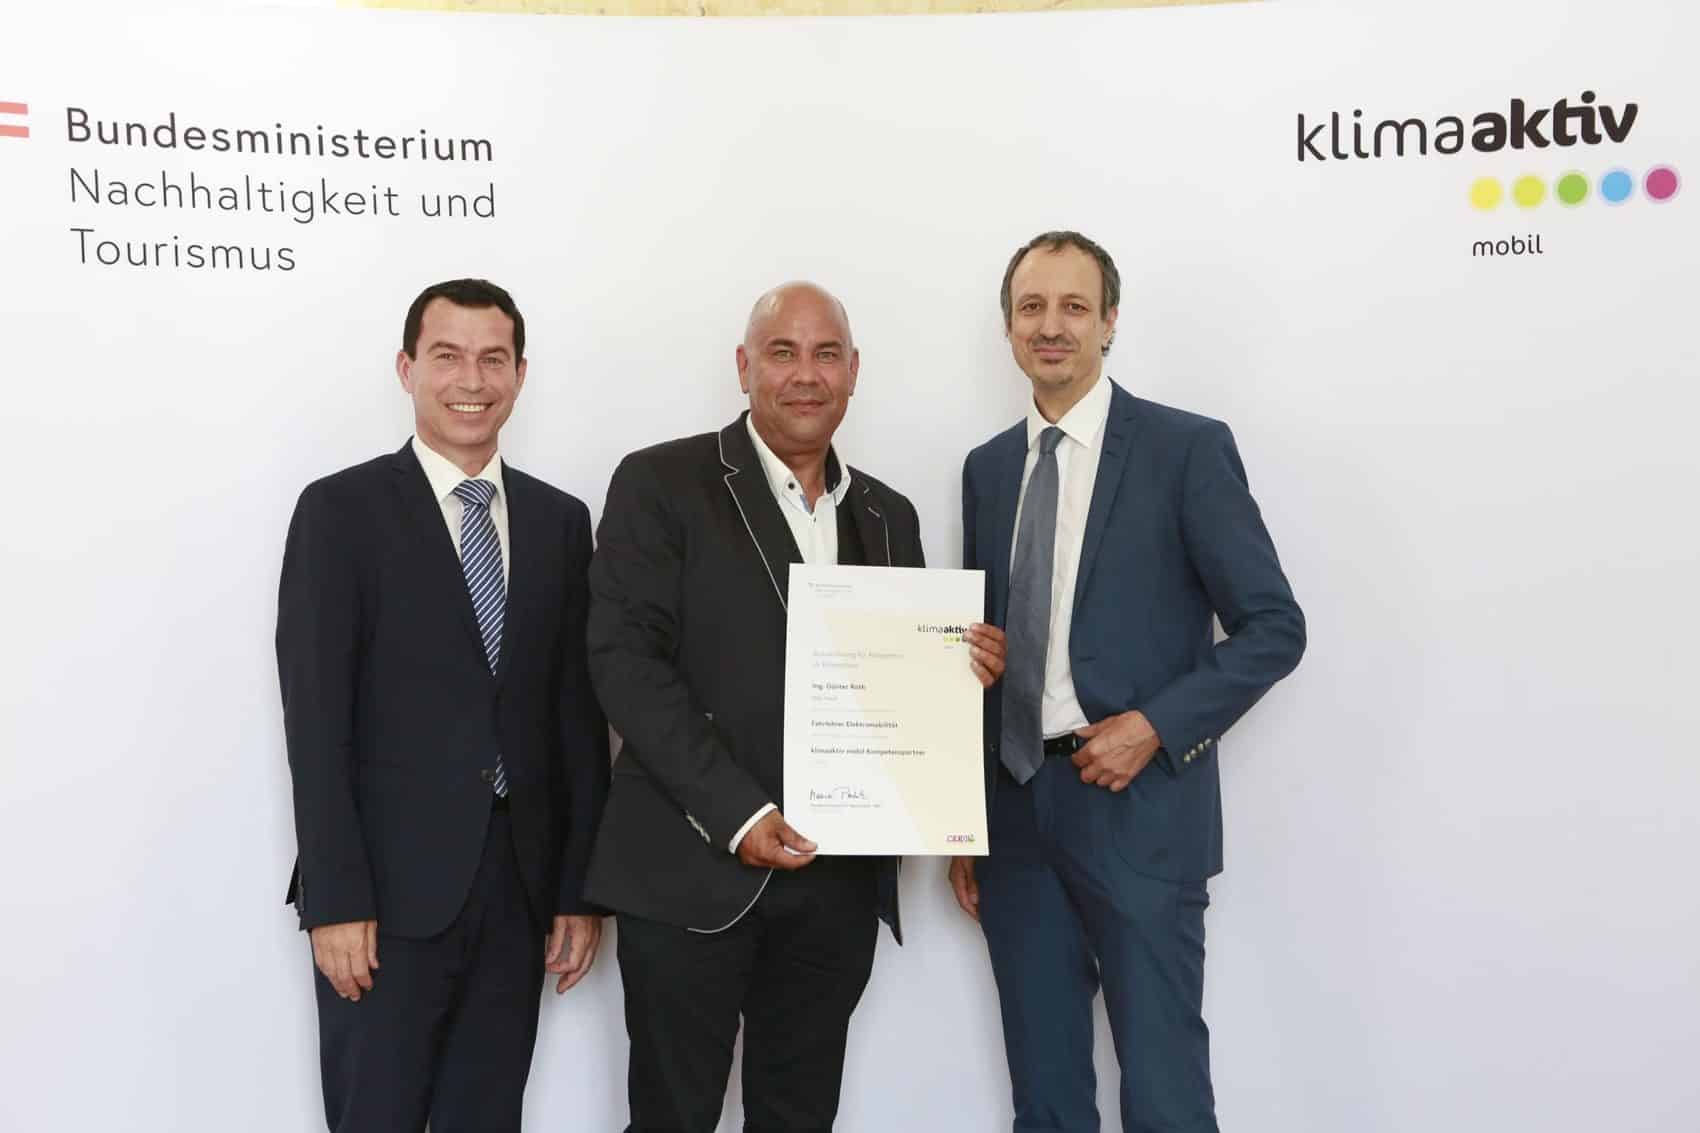 Unter den 11 ausgezeichneten Fahrschulen war auch die Villacher Fahrschule Gabriel. Günter Roth, Bild Mitte, nahm die Auszeichnung in Wien entgegen.